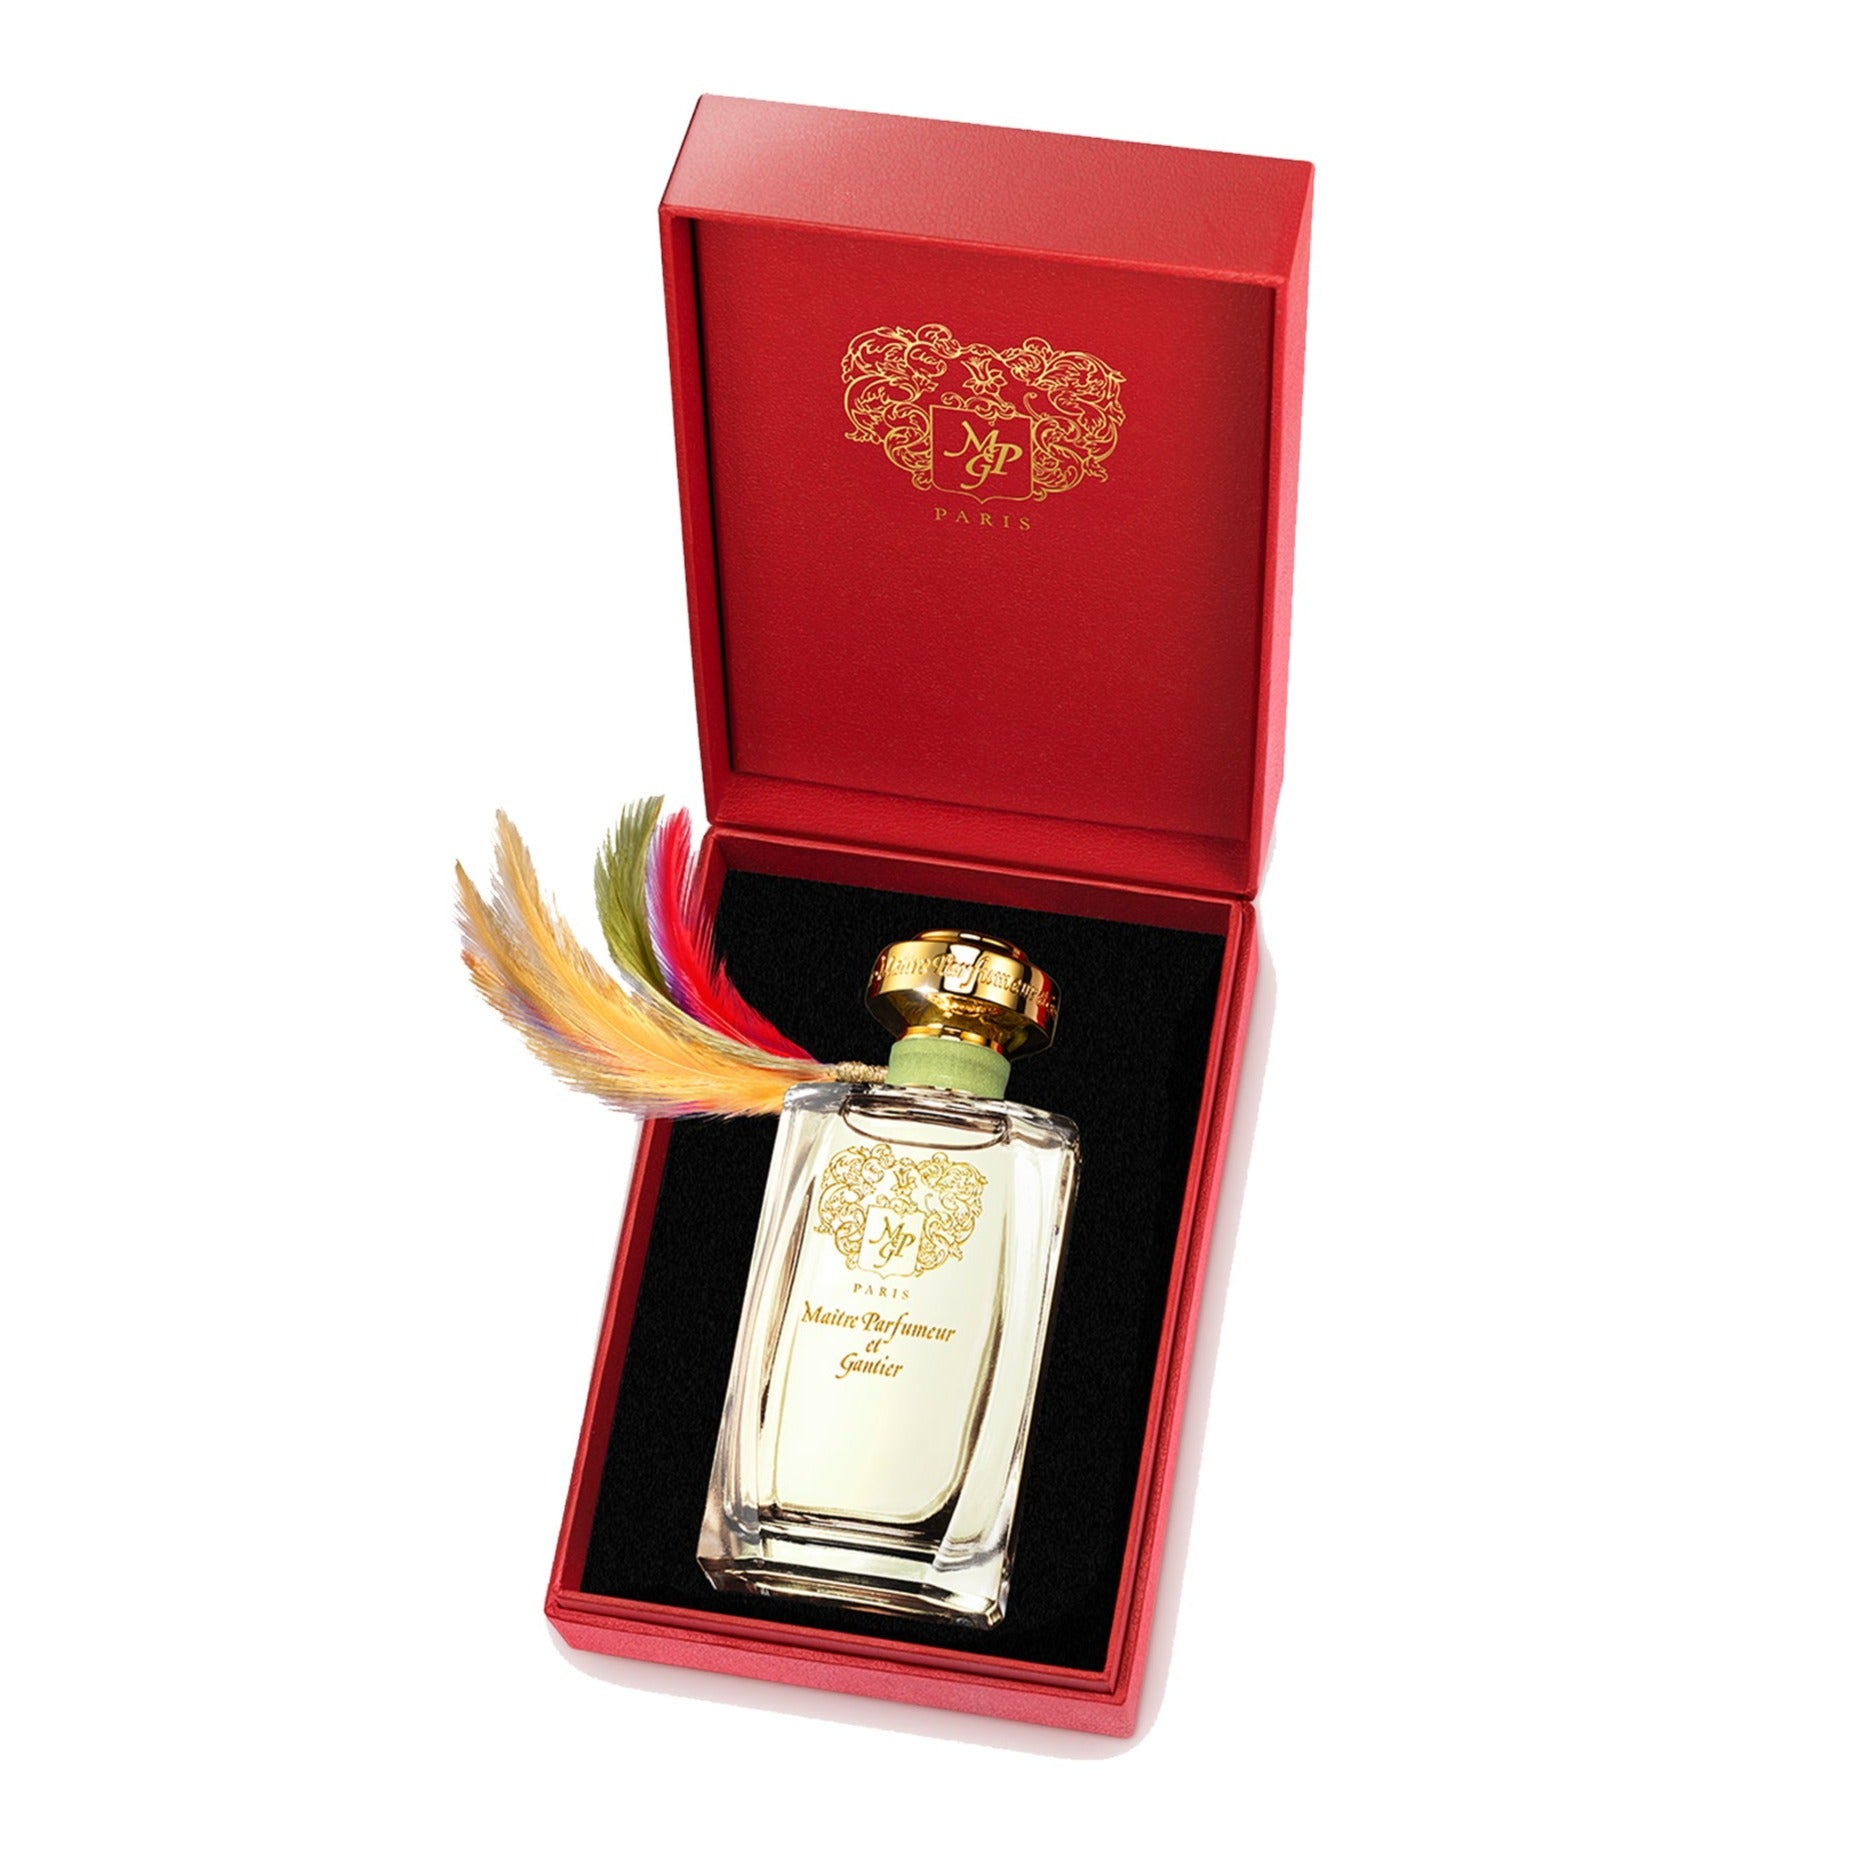 Bahiana 120ml Eau de Parfum Bottle by MAÎTRE PARFUMEUR ET GANTIER in presentation box.